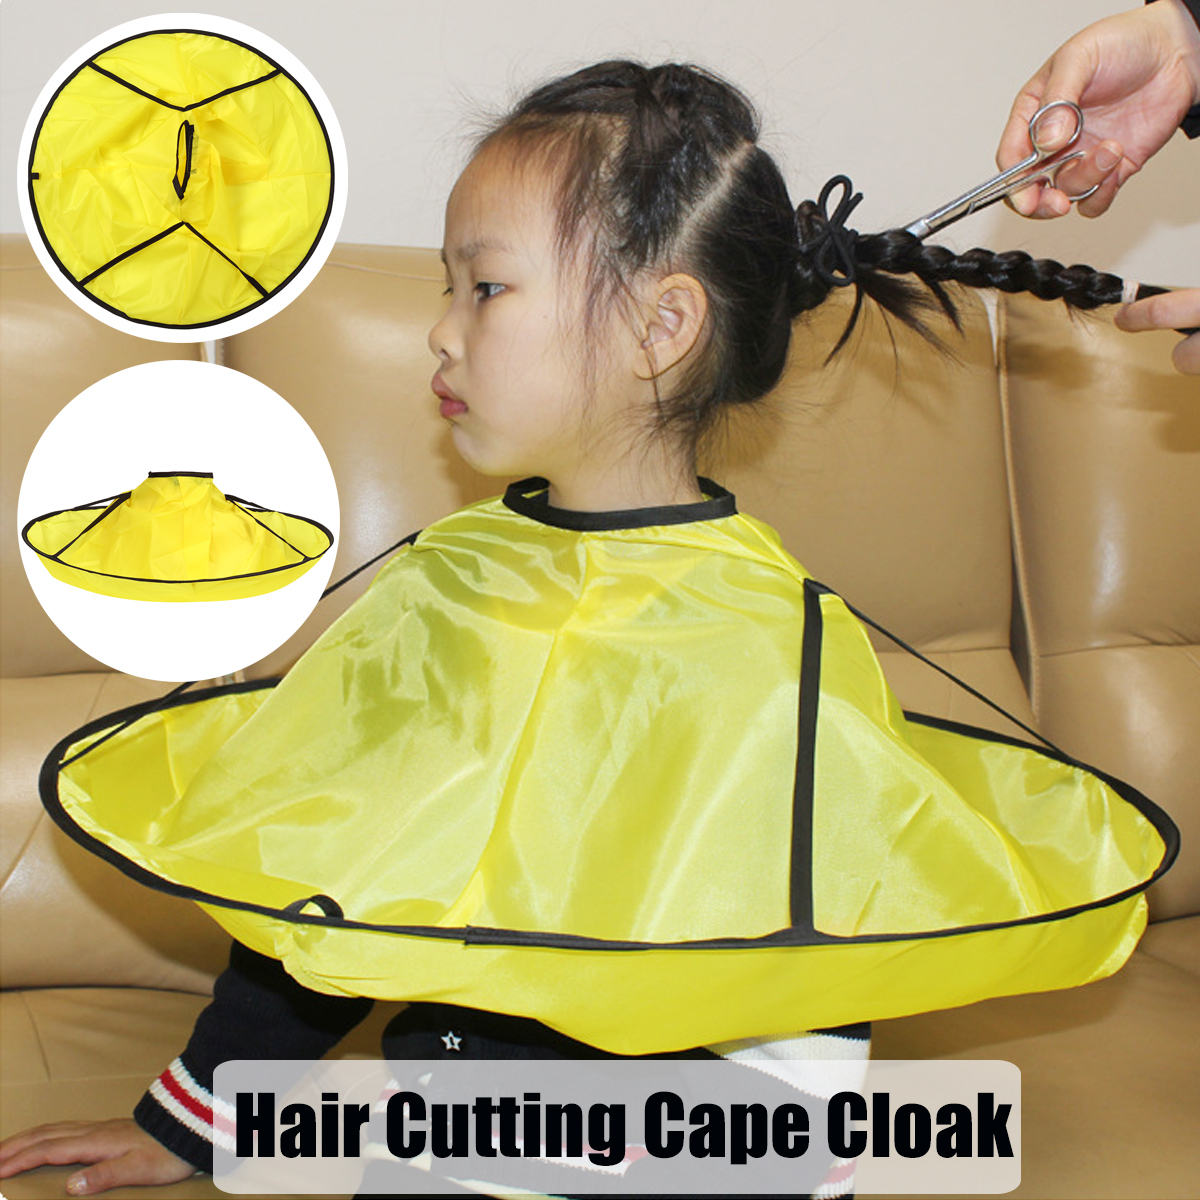 Hair-Cutting-Cloak-Umbrella-Cape-Cutting-Cloak-Wrap-Hair-Shave-Apron-Hair-Barber-Gown-Cover-Househol-1812250-1